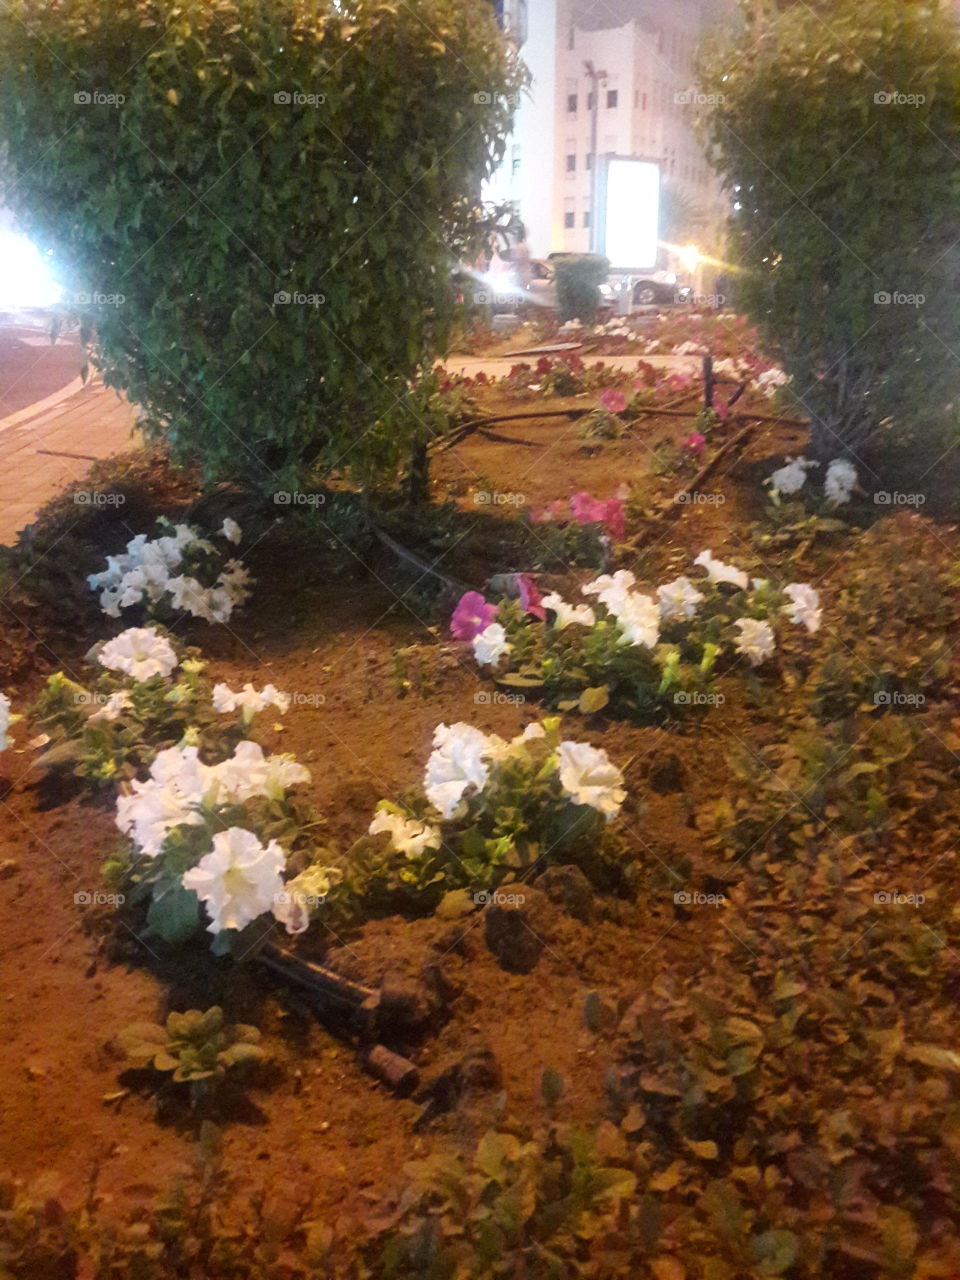 Blooming Flowers in Qatar